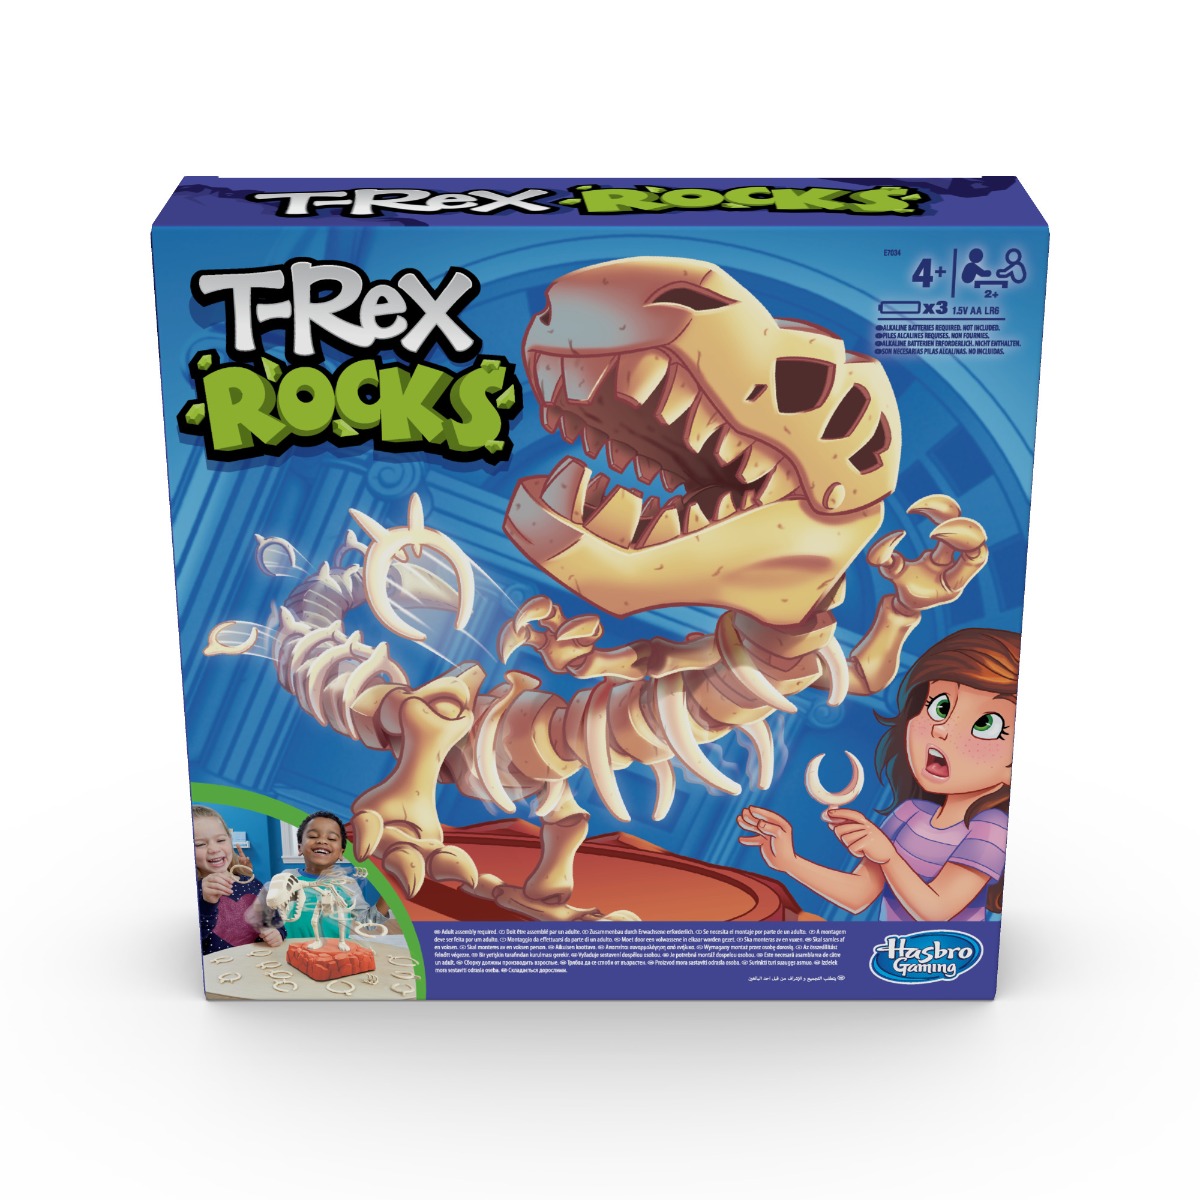 Joc de societate T-Rex Rocks Hasbro Games